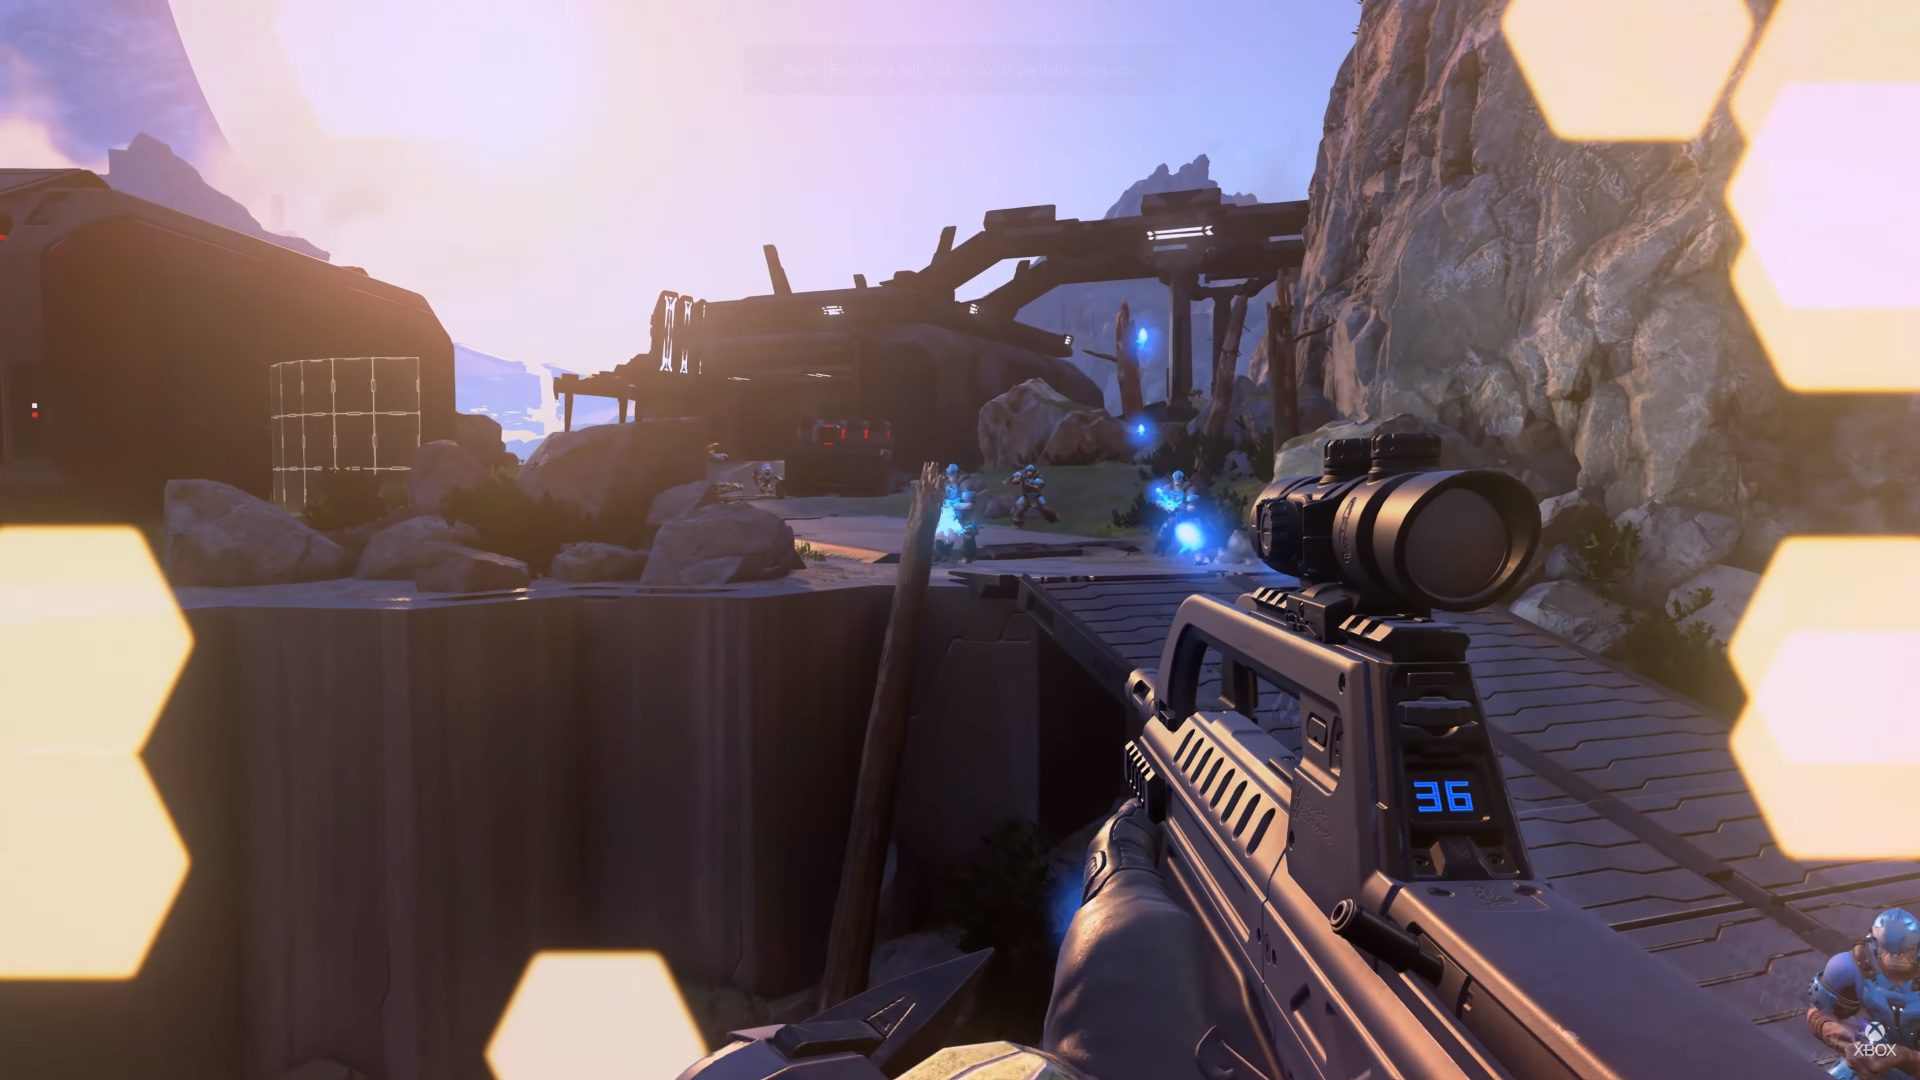 El tráiler gameplay de Halo Infinite muestra detalles no vistos en la demo completa - Además de la demo en la que se vio el primer gameplay de Halo Infinite, también se ha publicado un tráiler mostrando nuevos detalles del juego.